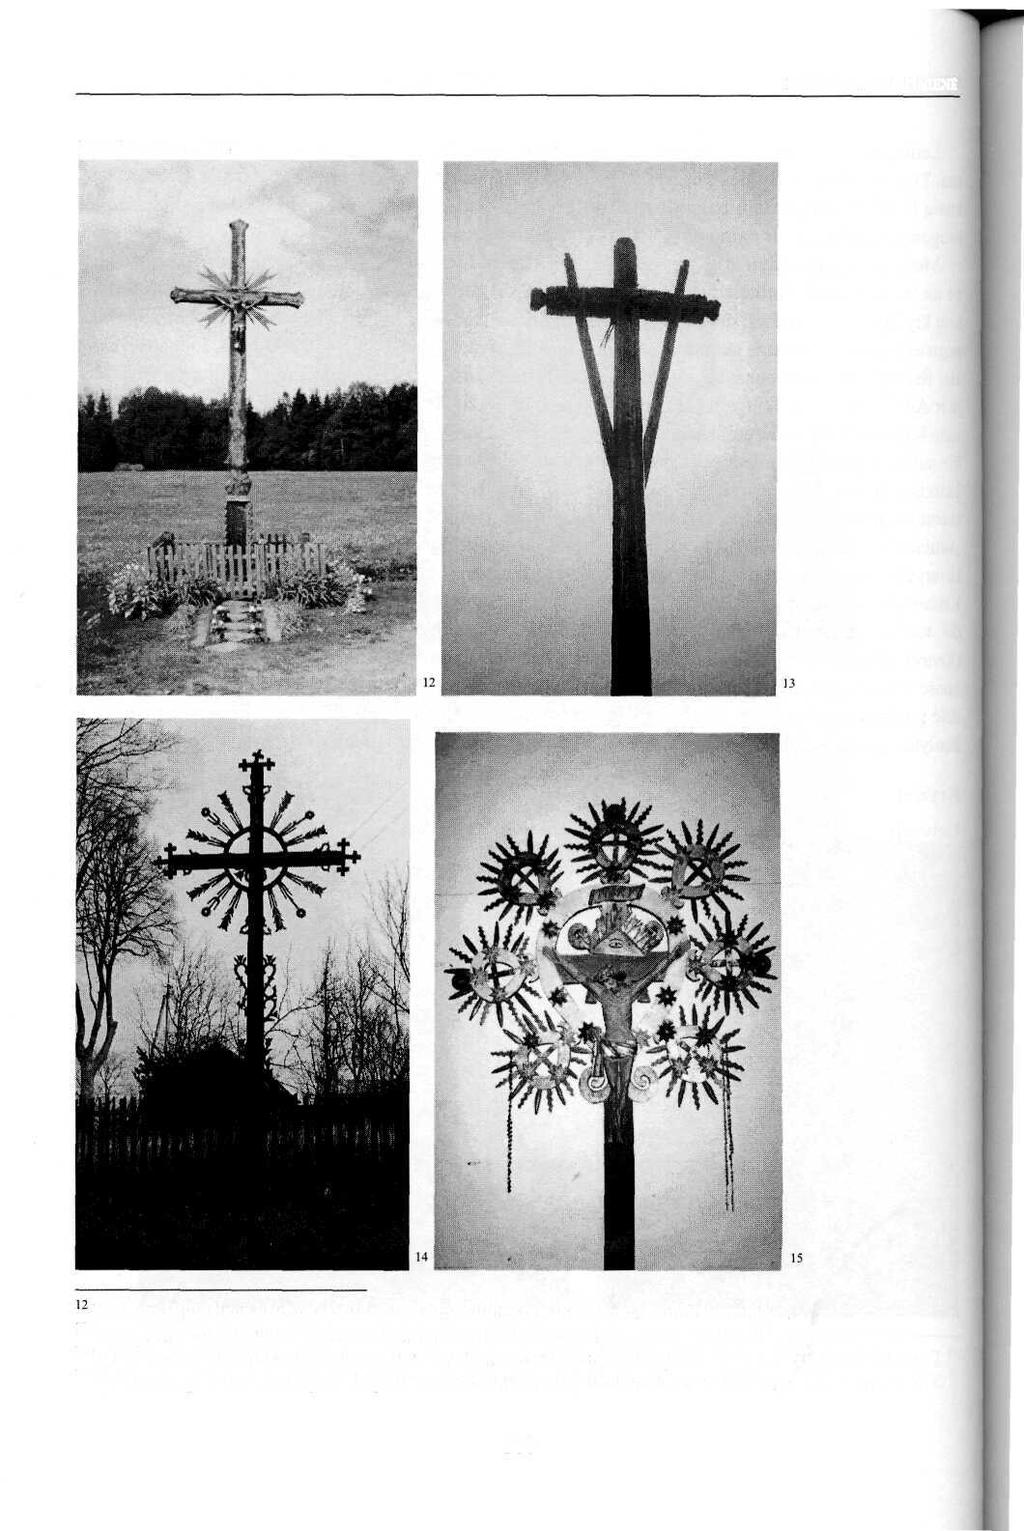 ELENA MATULIONIENĖ Kryžiai 13 14 15 Vytauto Bliudžiaus kryžius, statytas 1993 m. Šilutės raj., Švėkšna. Iš autorės archyvo. Tomo Miškinio kryžius. Varėnos raj., Mančiagirės k.